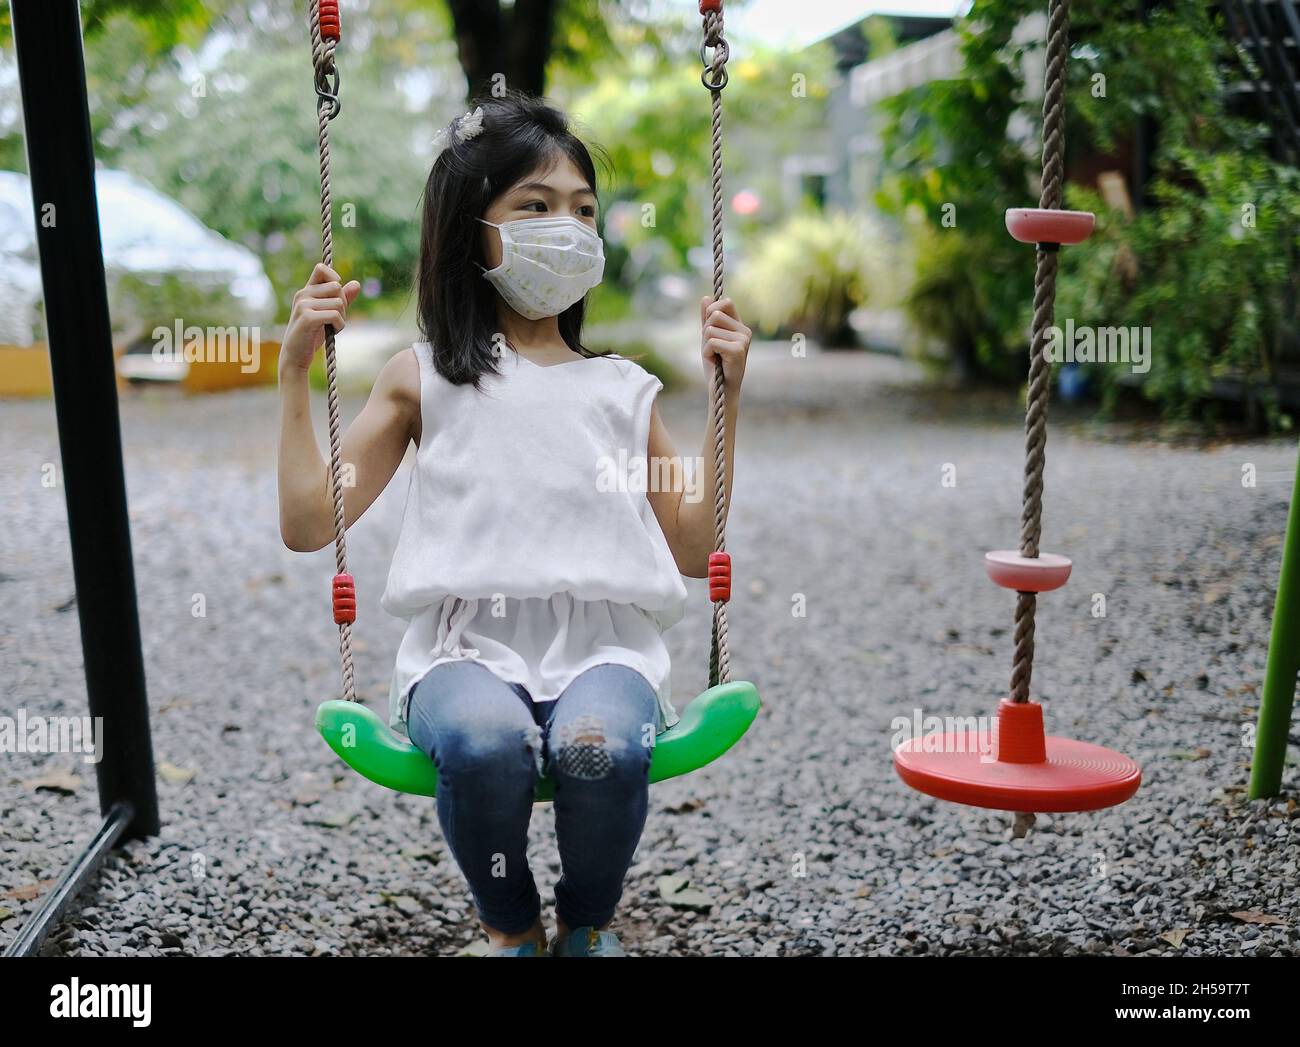 Une jeune fille asiatique mignonne avec un masque blanc joue seule sur une balançoire dans un terrain de jeu pendant la pandémie Covid-19. Banque D'Images